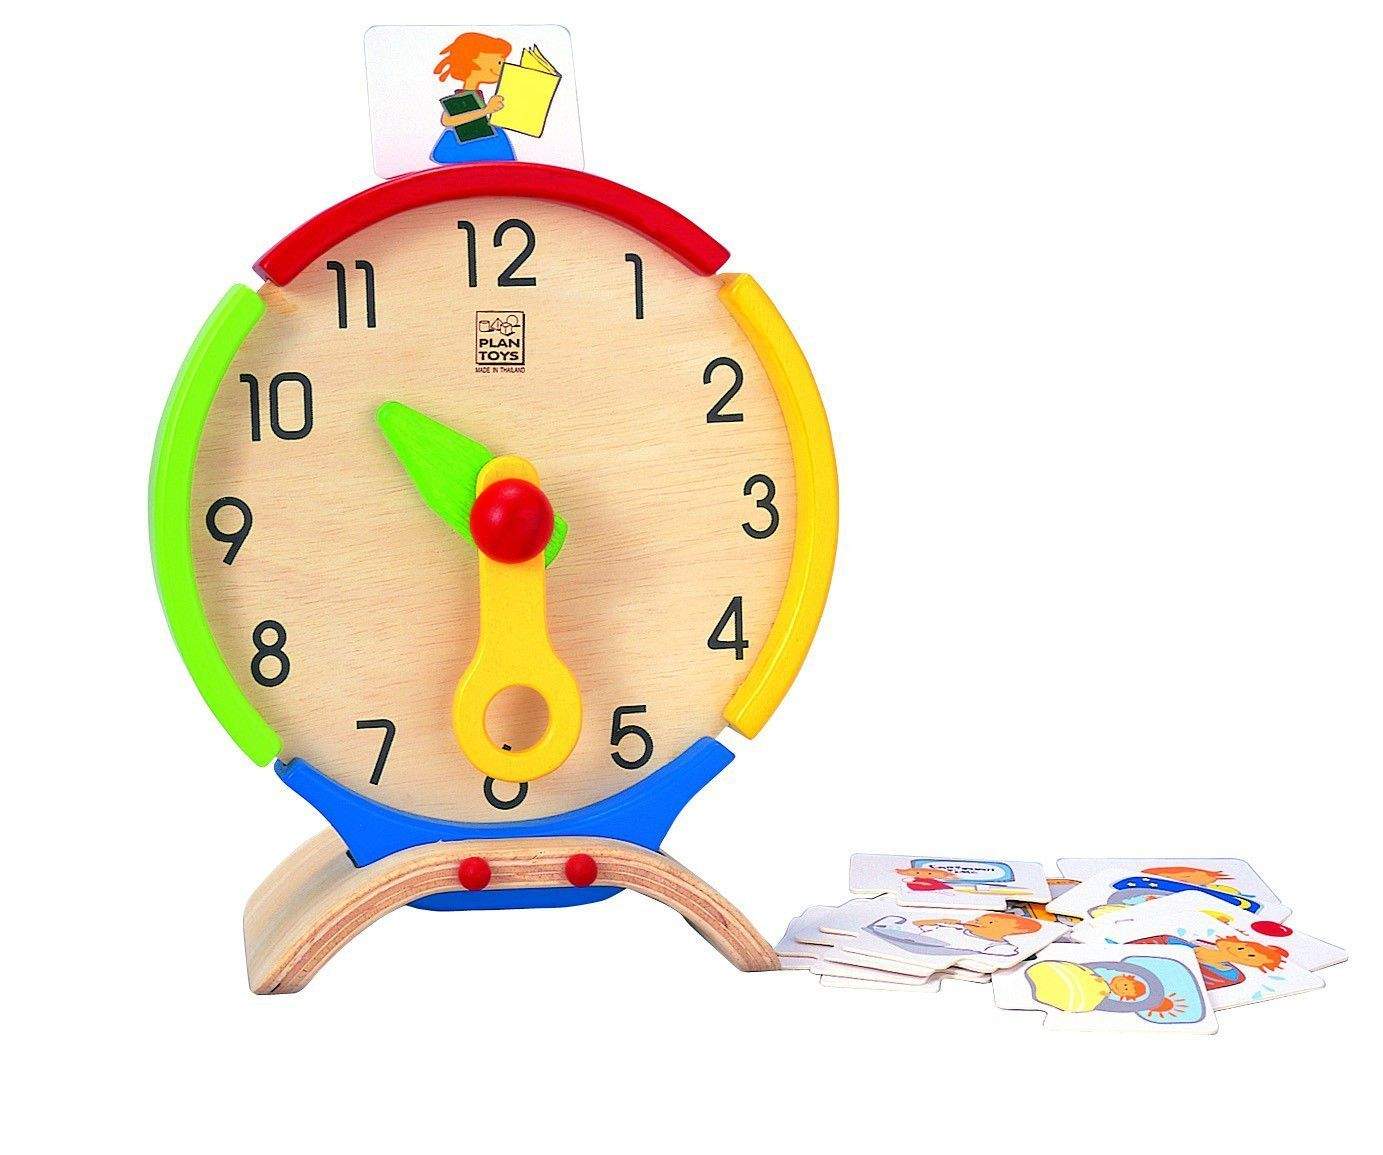 Купить игрушку часы. Часы игрушка. Обучающая игрушка часы. Часы Тойс. Мягкая игрушка часы.